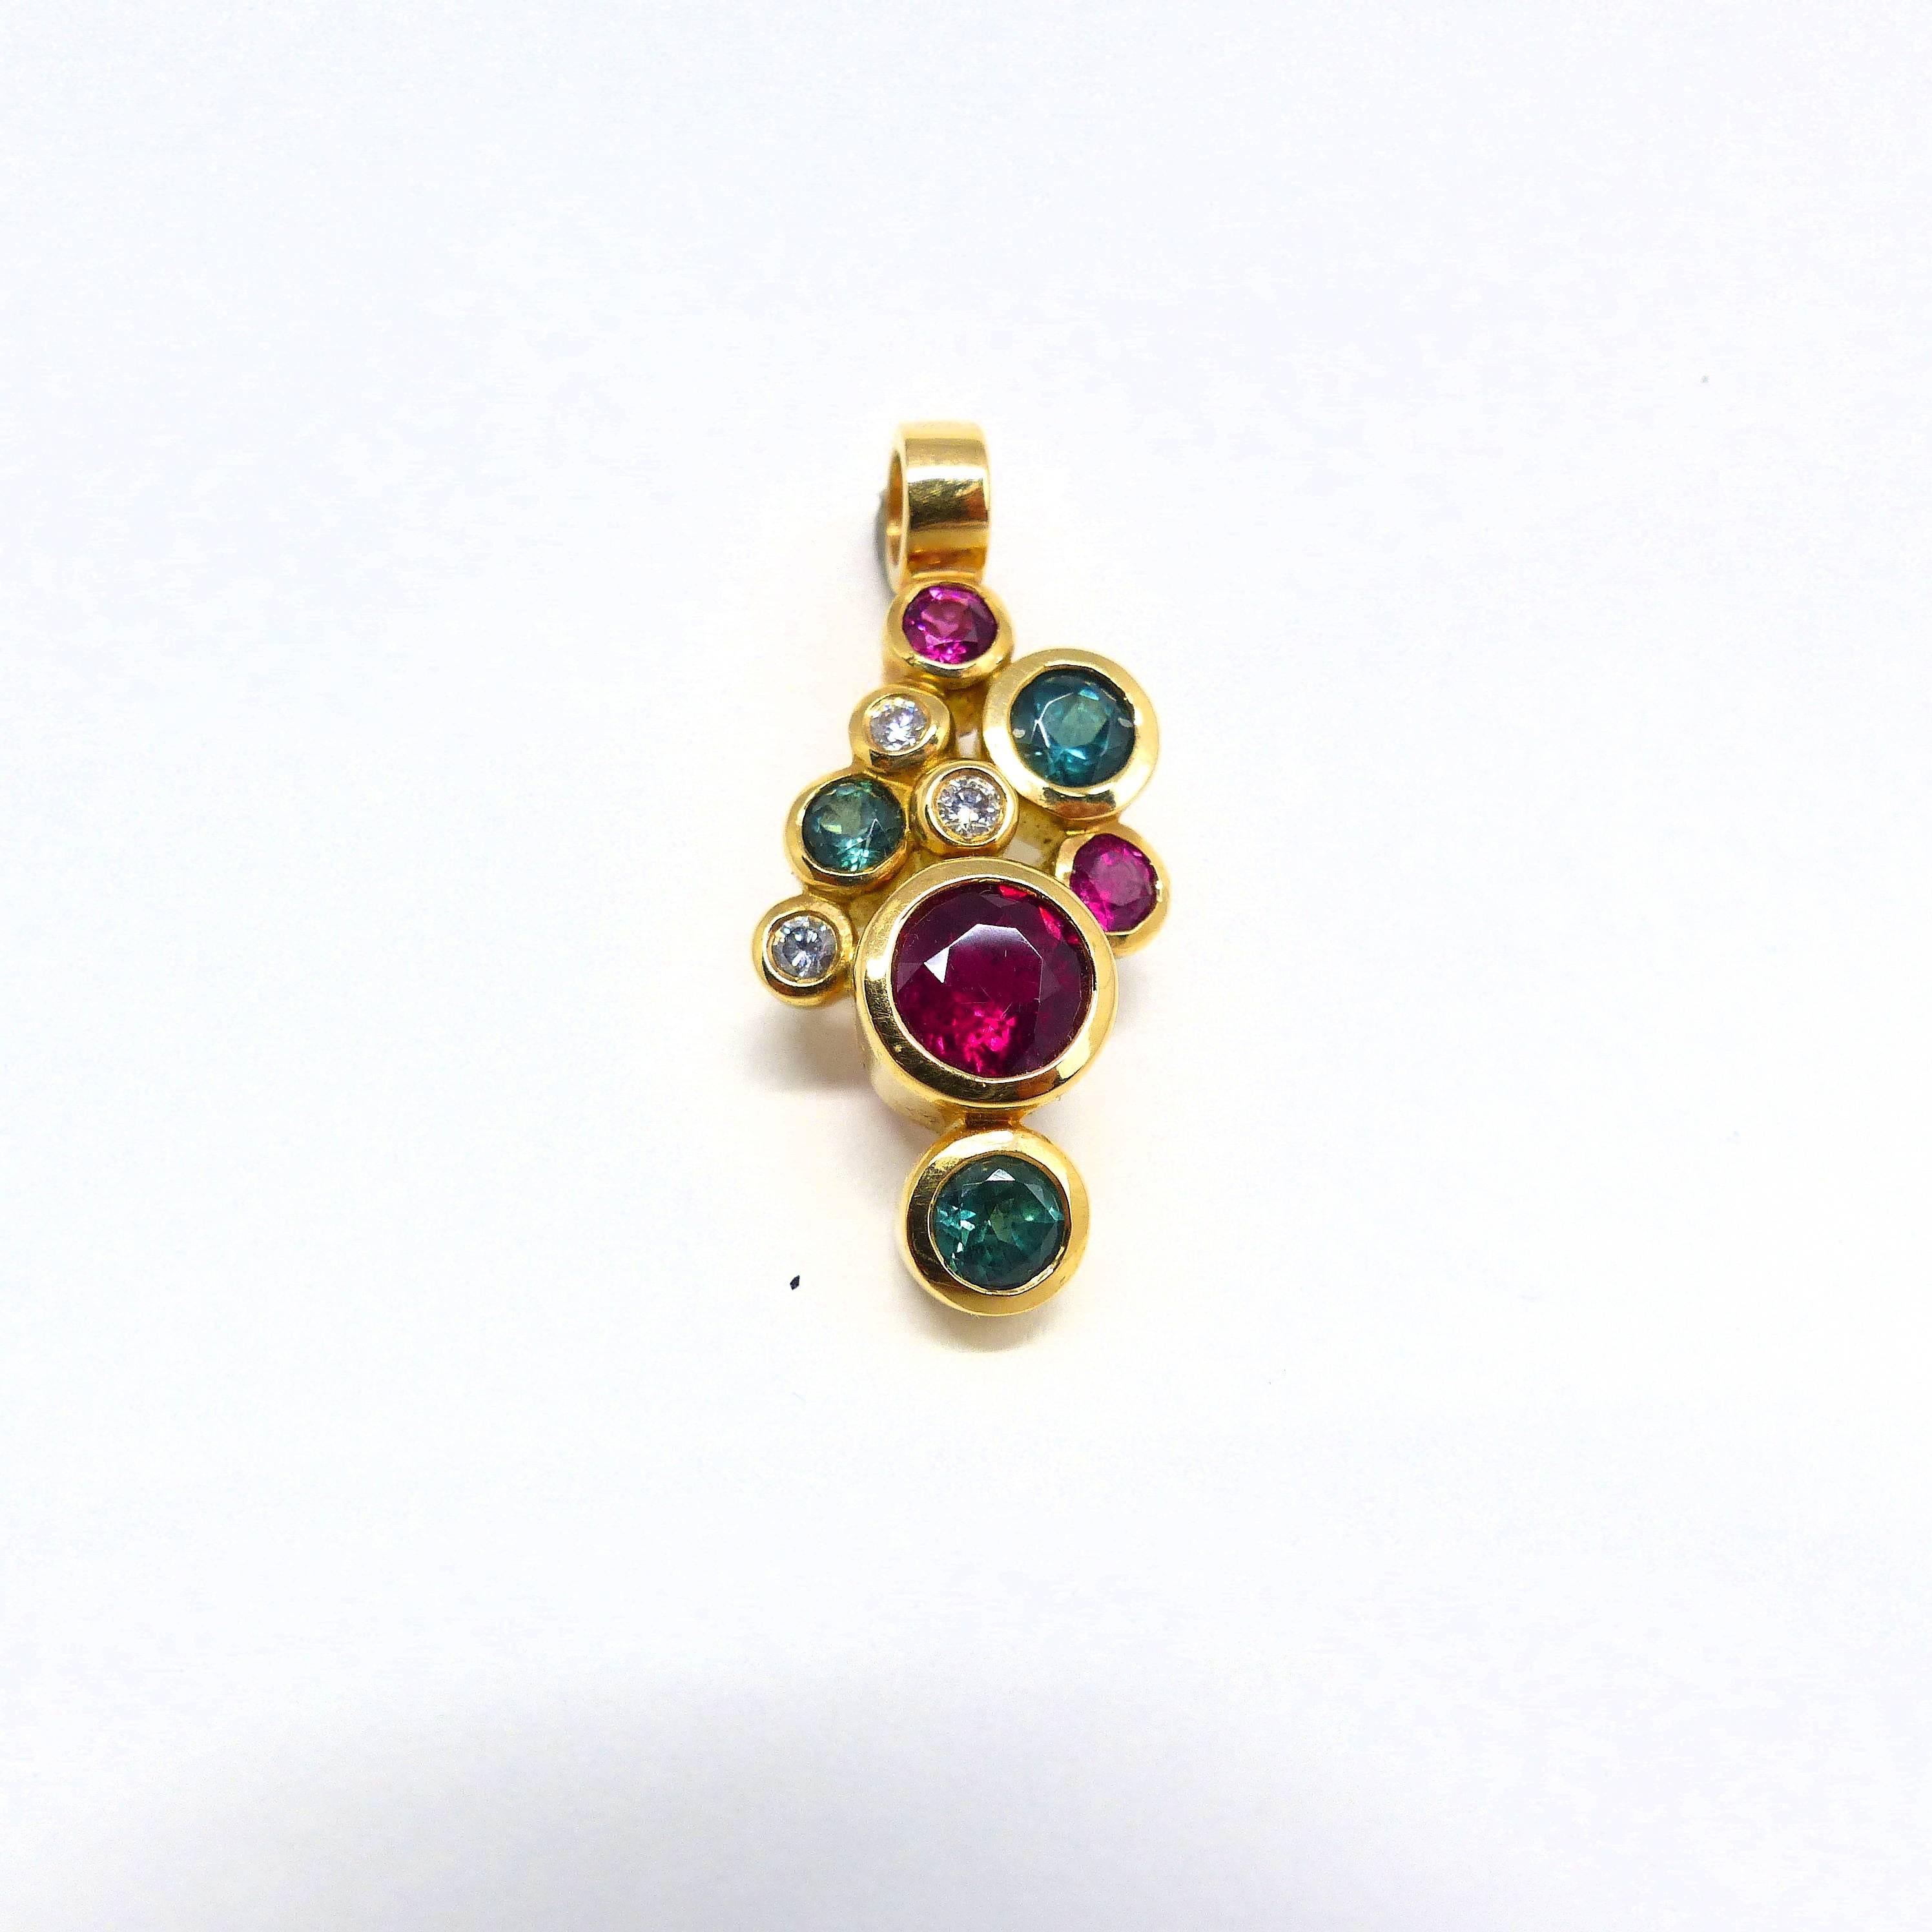 Thomas Leyser est réputé pour ses créations de bijoux contemporains utilisant des pierres précieuses de couleur et des diamants. 

Ce pendentif en or rose 18 carats est serti de 6x tourmalines et rubélites fines (facettées, rondes, 3-6 mm, 1,74 ct).